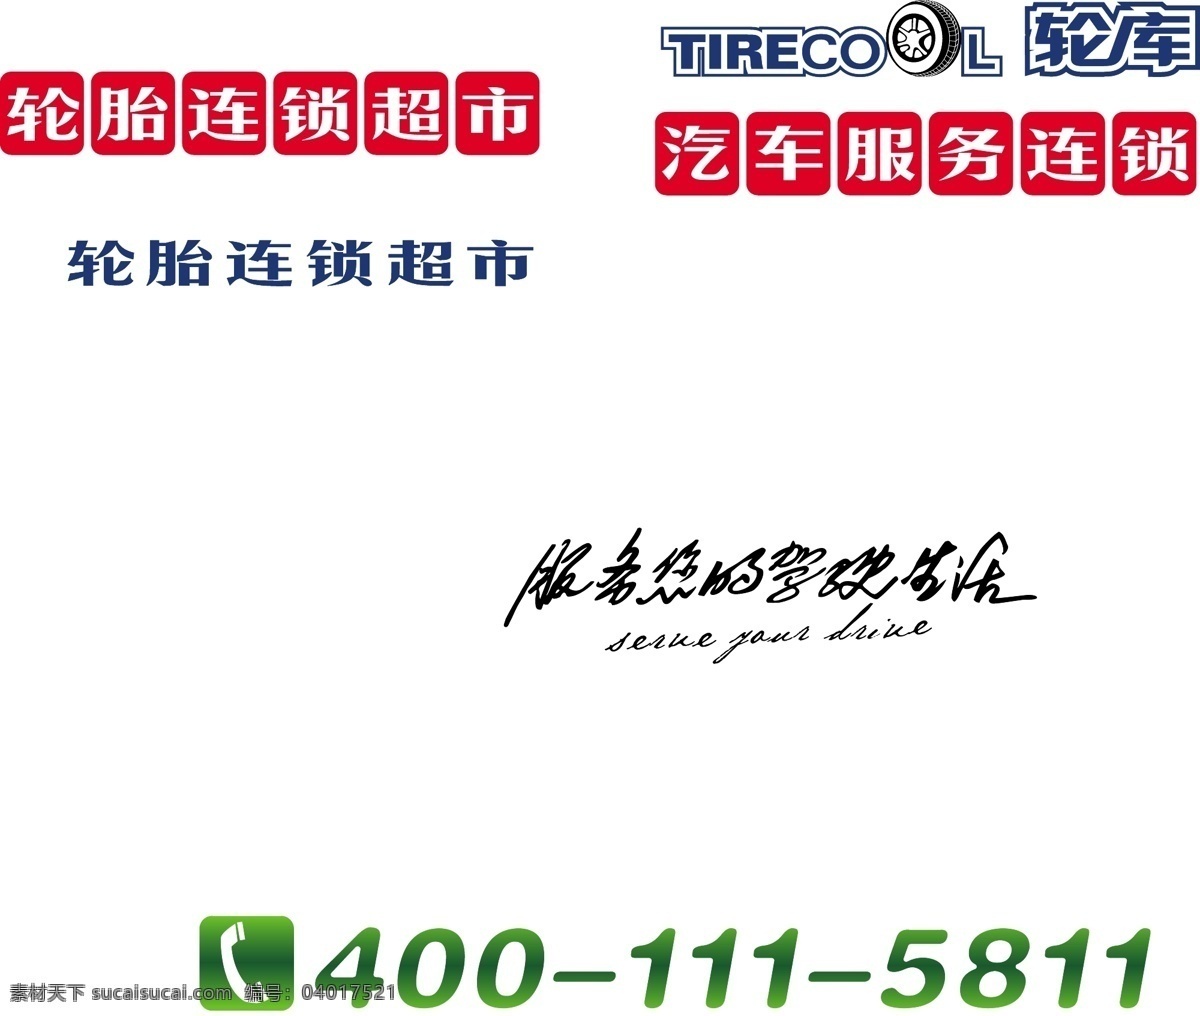 轮 库 logo 标识标志图标 标语 电话 红色 绿色 企业 标志 艺术字 轮库logo 矢量 psd源文件 logo设计